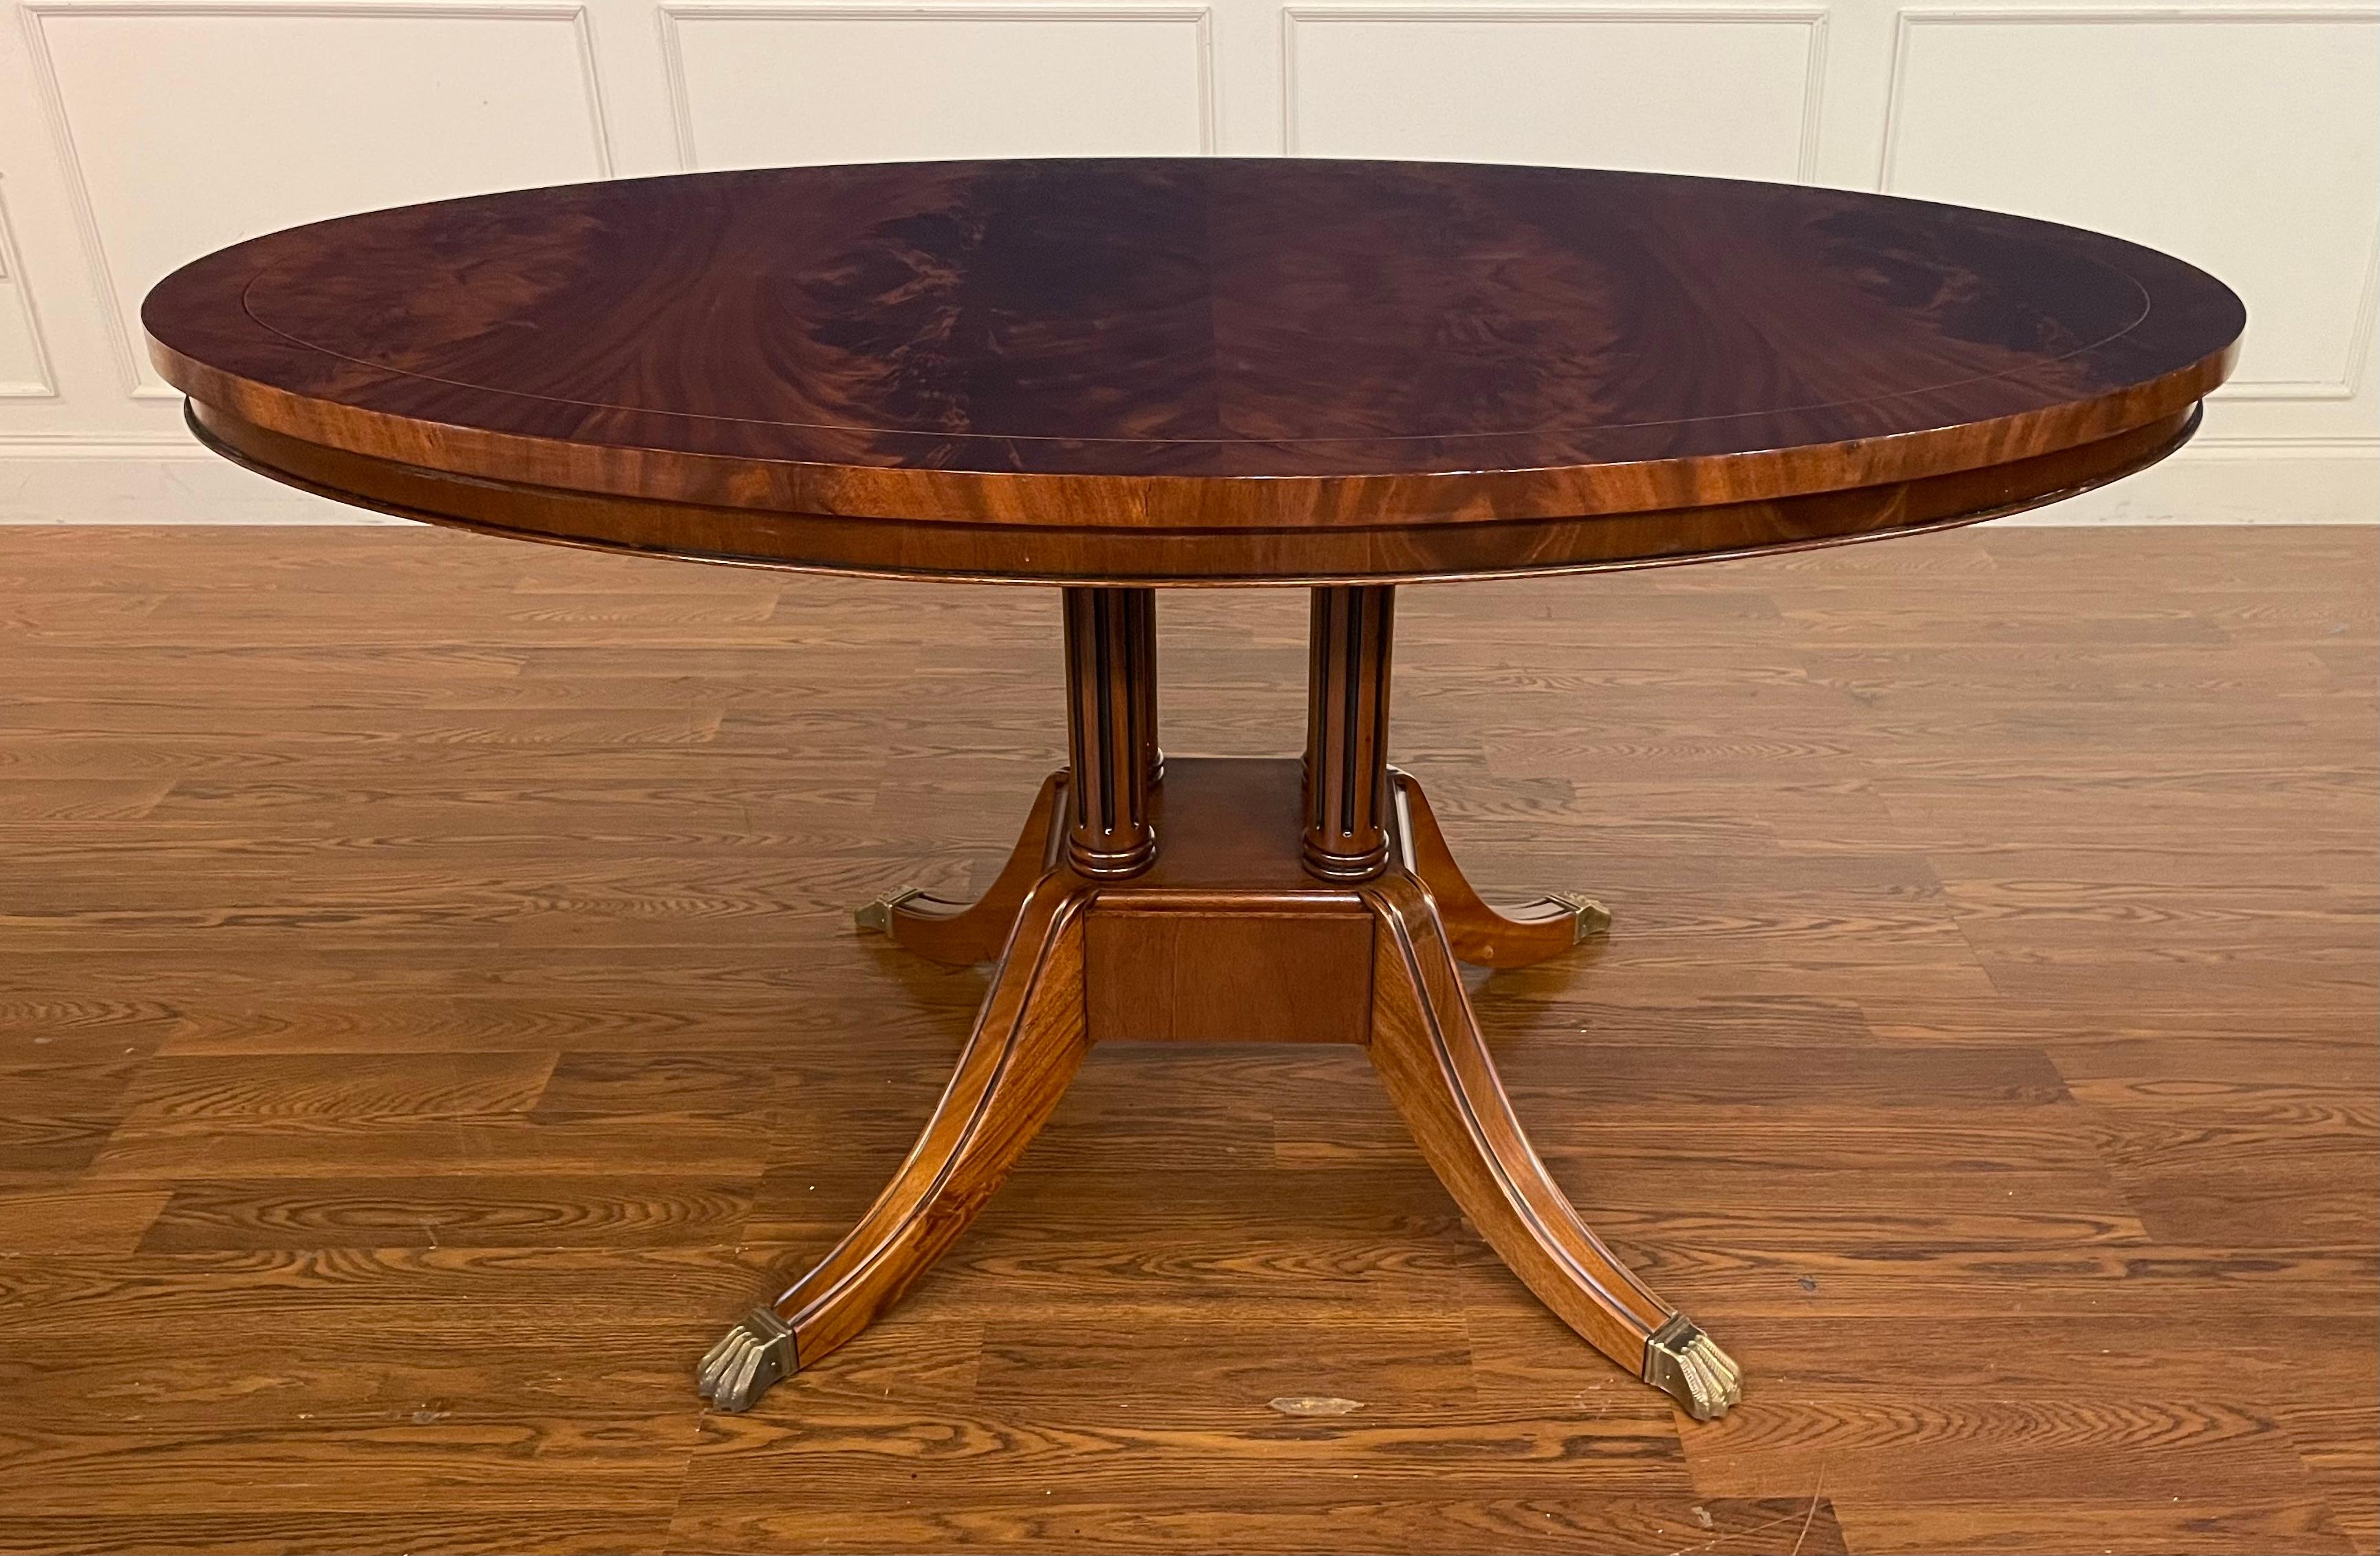 Il s'agit d'une table ovale en acajou fabriquée sur commande dans l'atelier de Leighton Hall à Suwanee, en Géorgie. Cette table est idéale comme table de petit-déjeuner, table de salle à manger pour un appartement, table de jeu ou table de foyer. Il